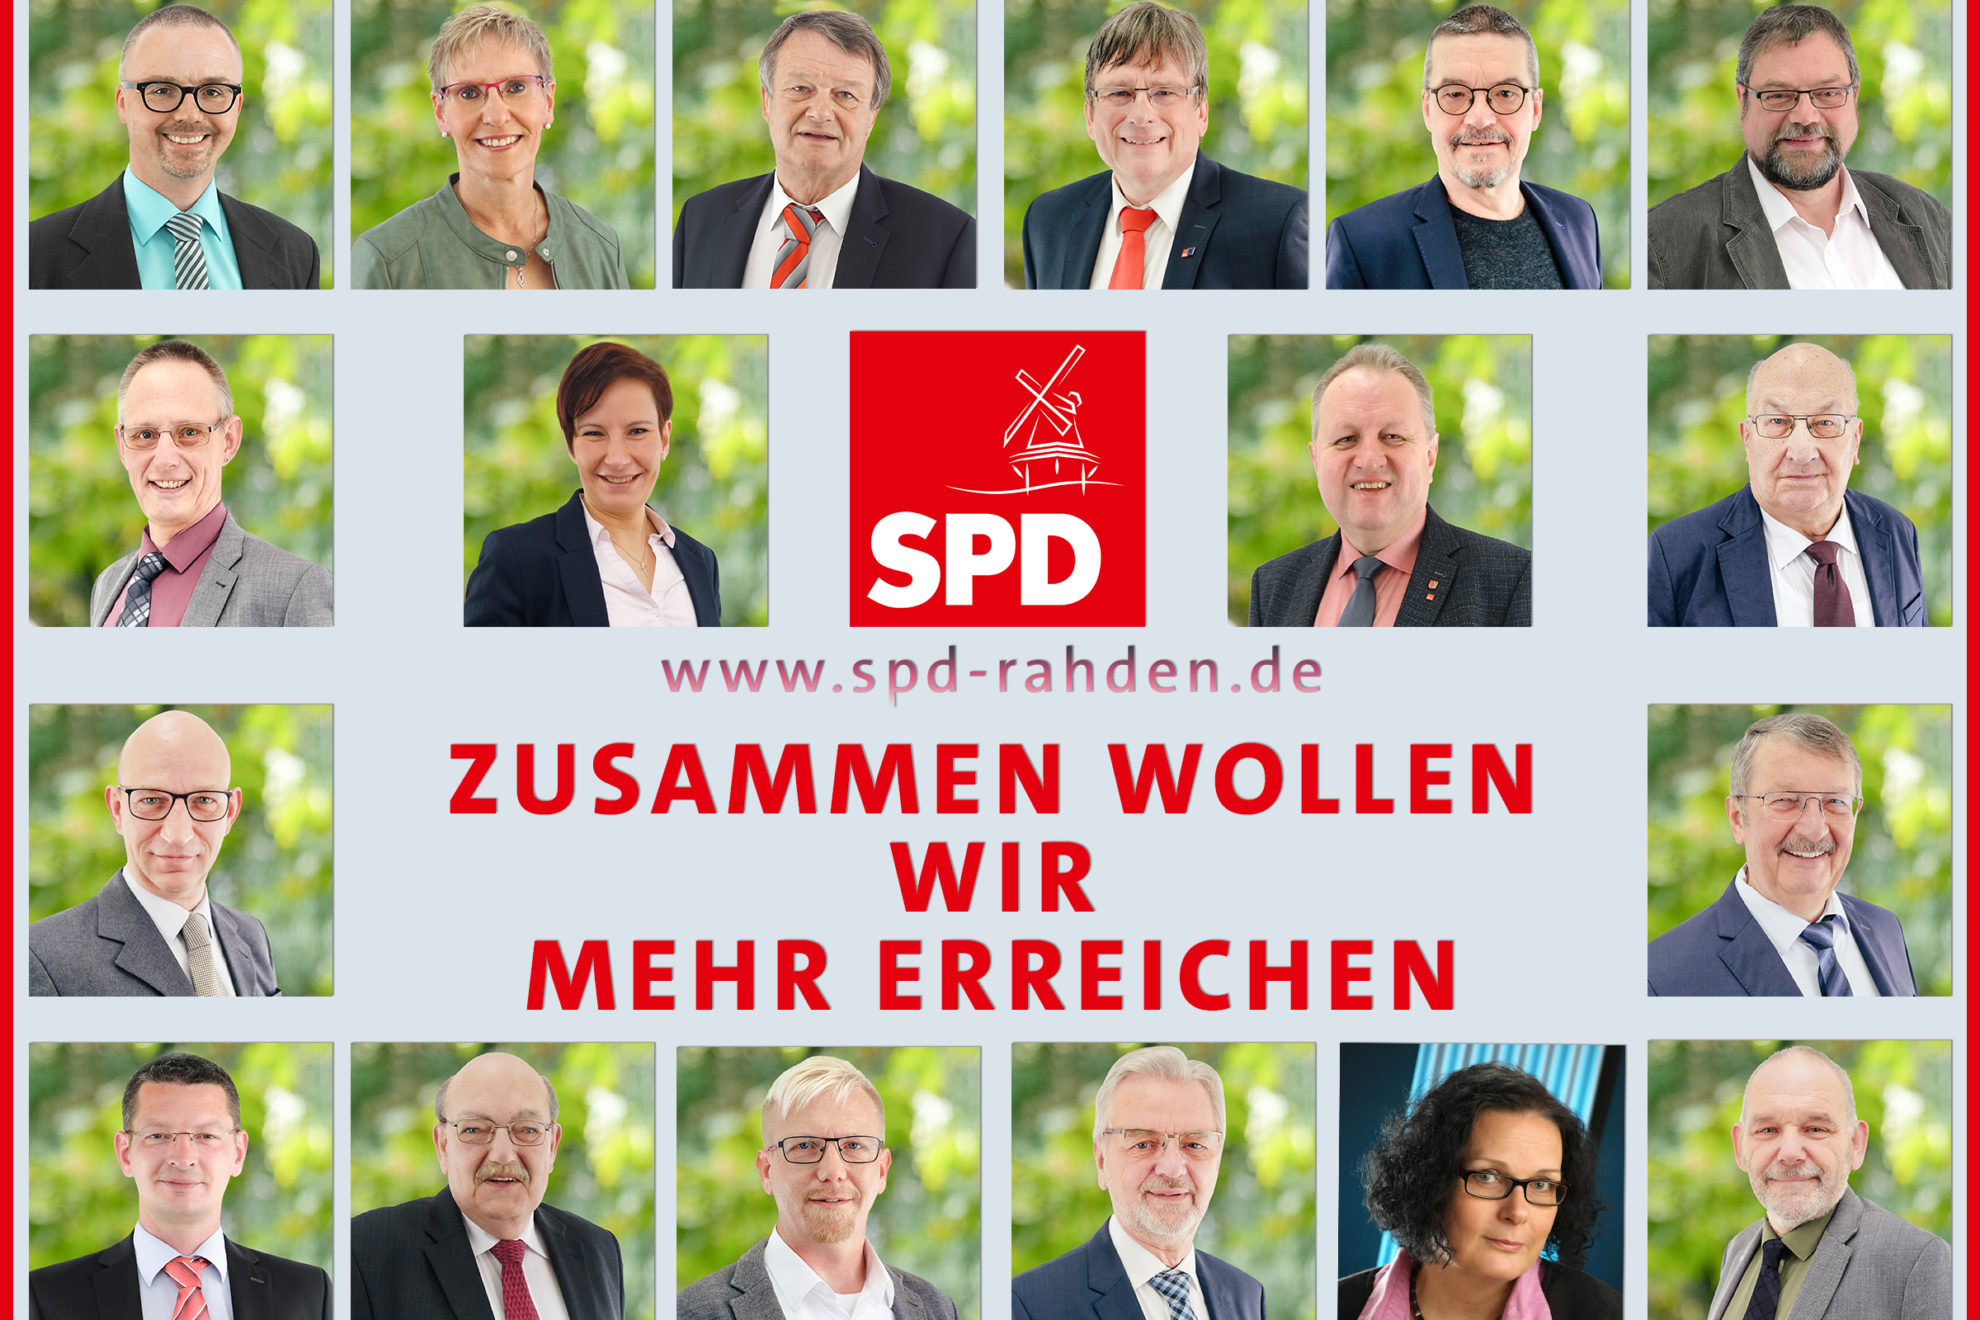 Team SPD Rahden